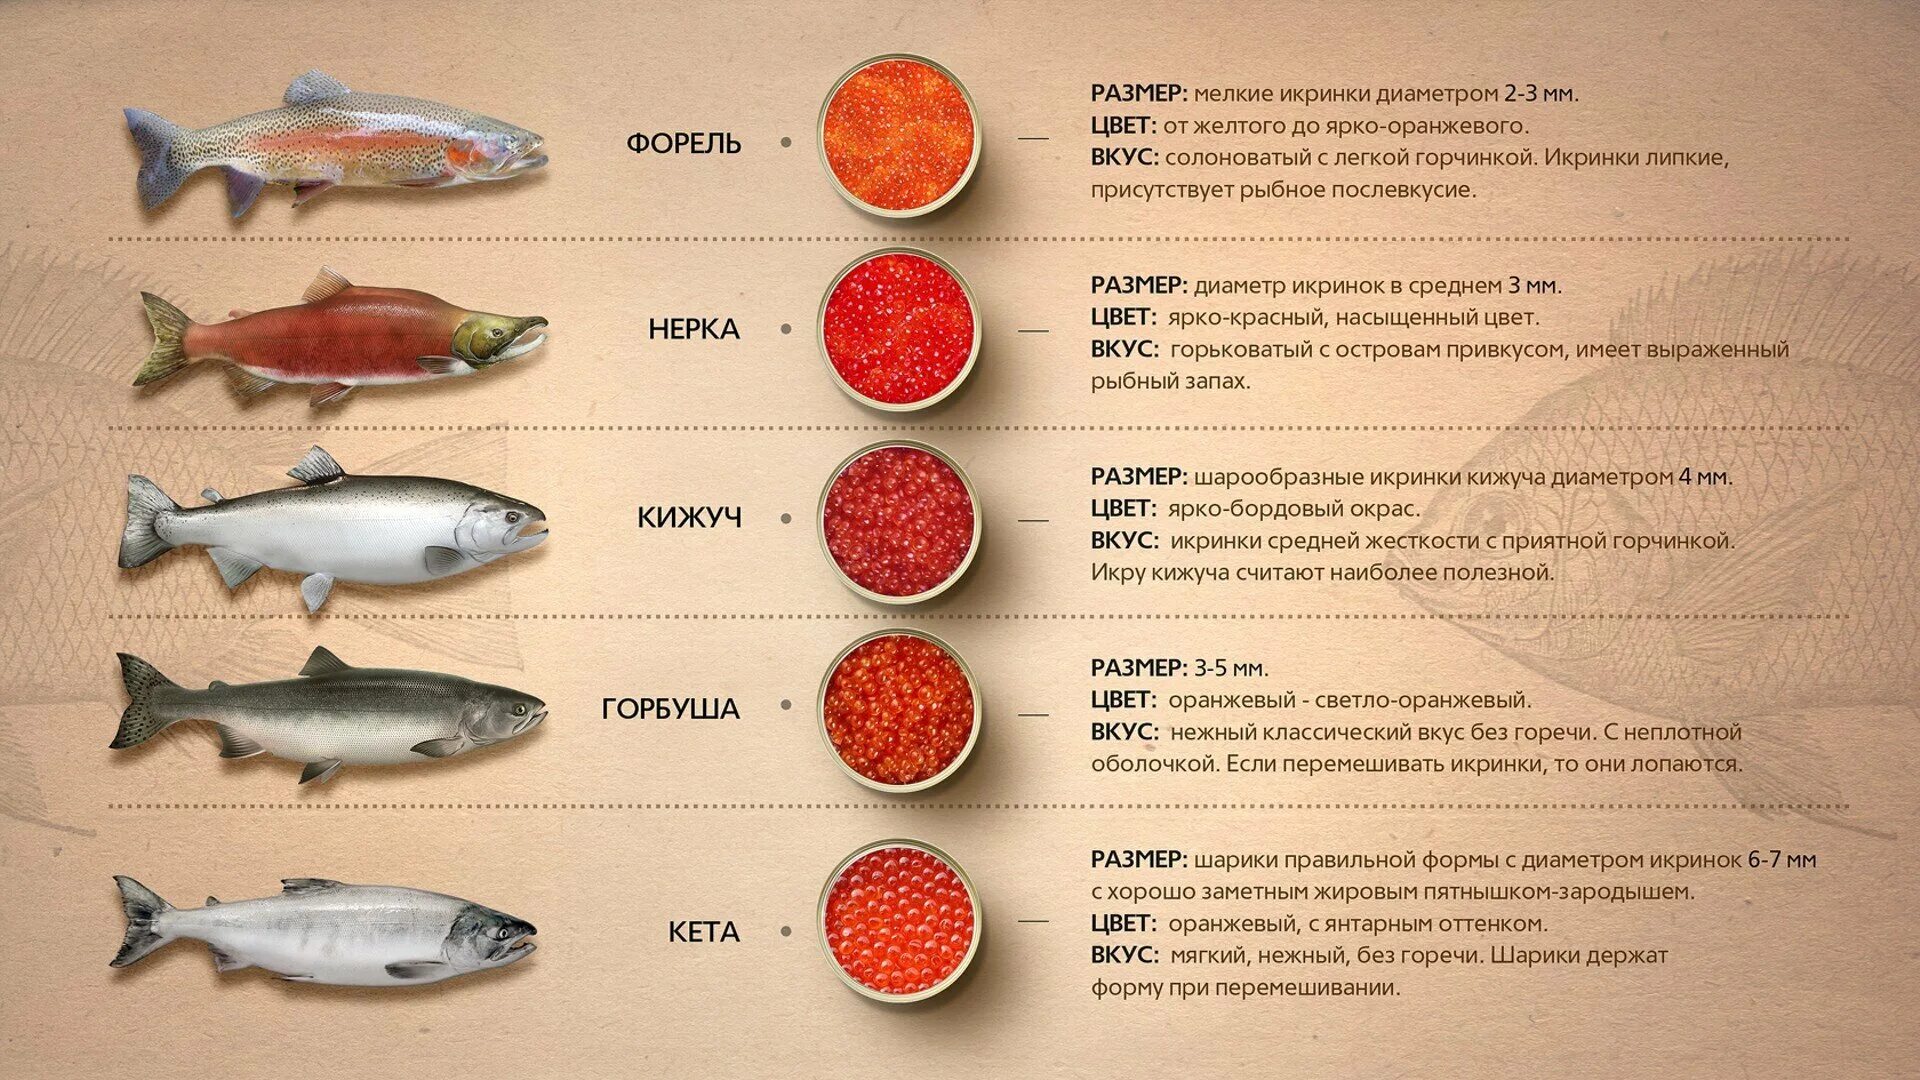 Польза и вред лососевых рыб. Рыбы семейства лососевых названия. Красная рыба виды названия. Размер икры лососевых рыб. Диаметр икринок лососевых рыб.